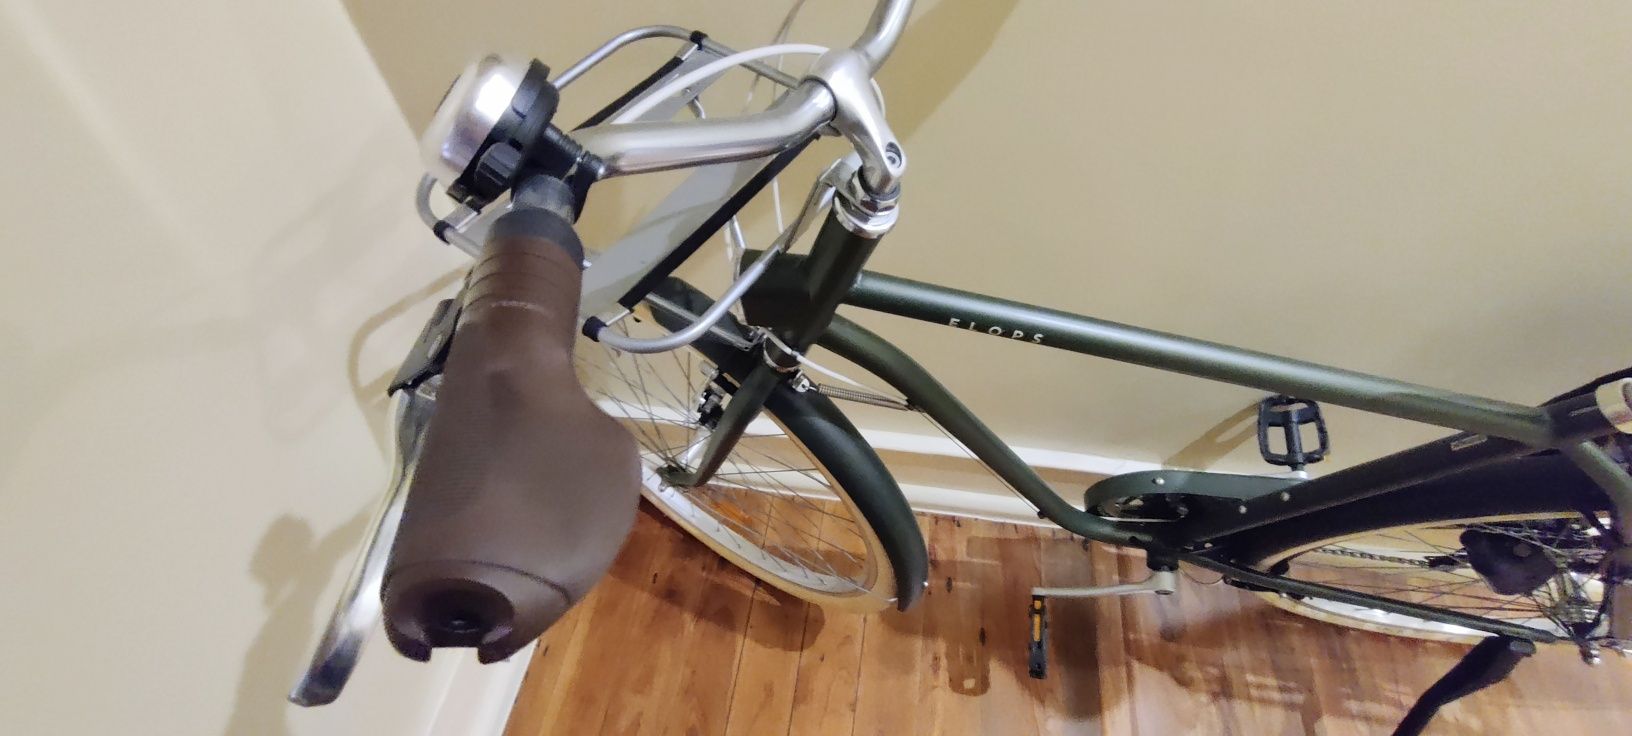 Bicicleta Elops 520 c/ revisão